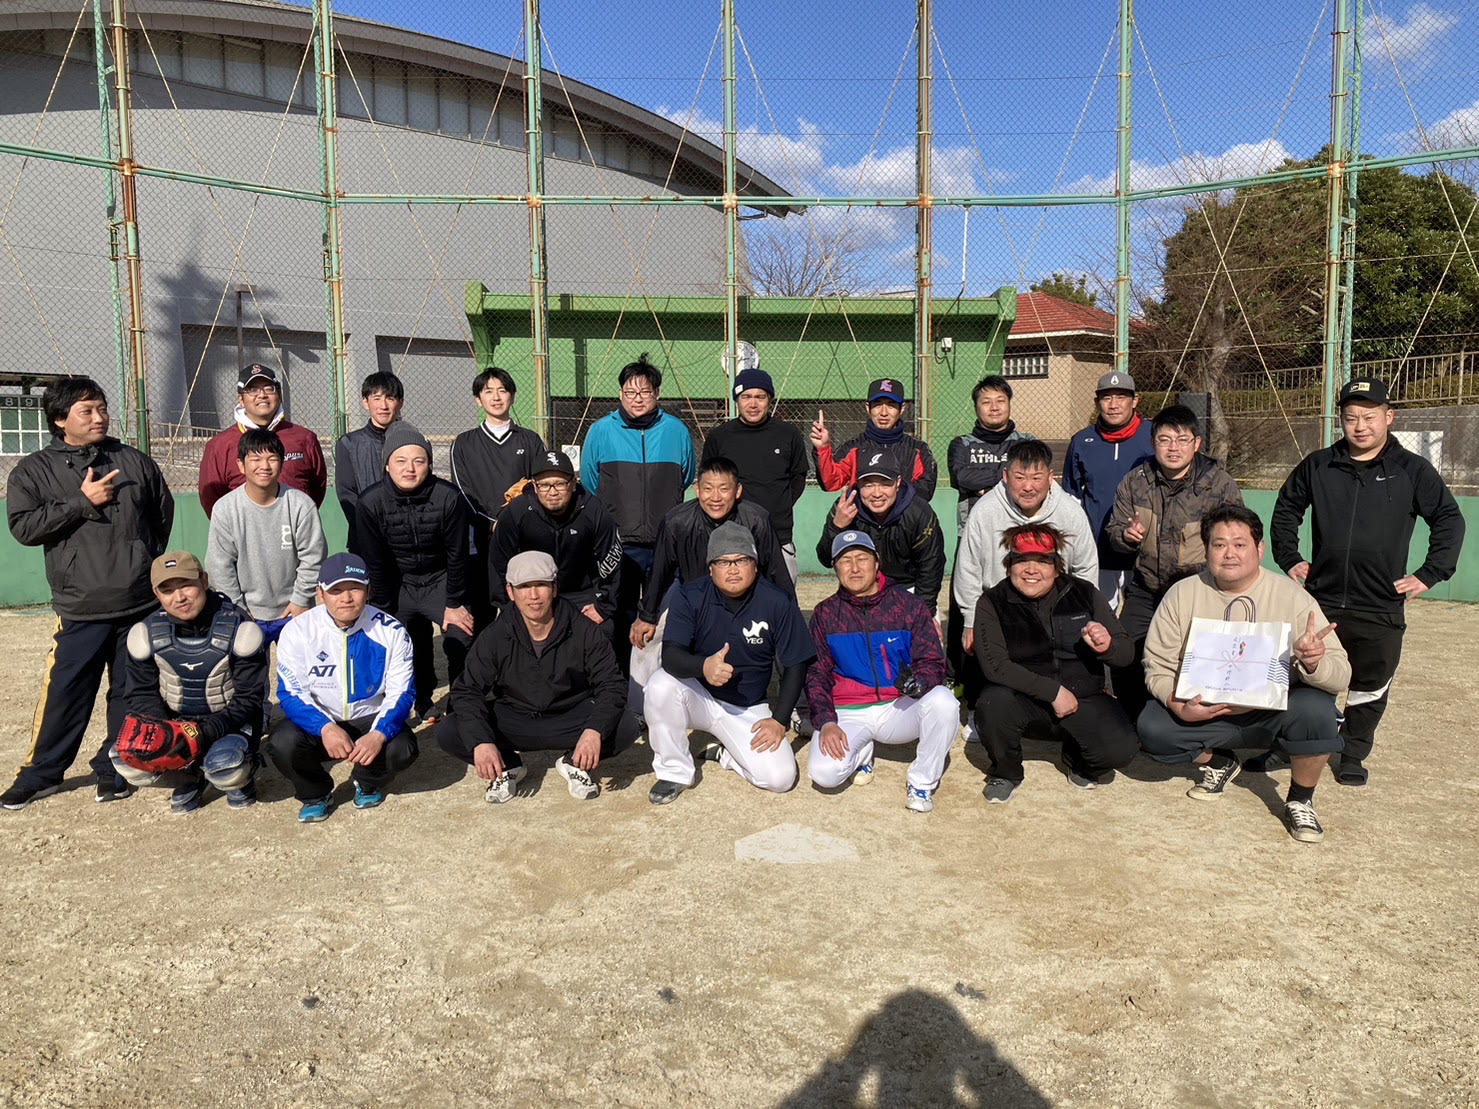 【活動報告】福江商工会議所 青年部 ソフトボール大会に参加してきました。￼